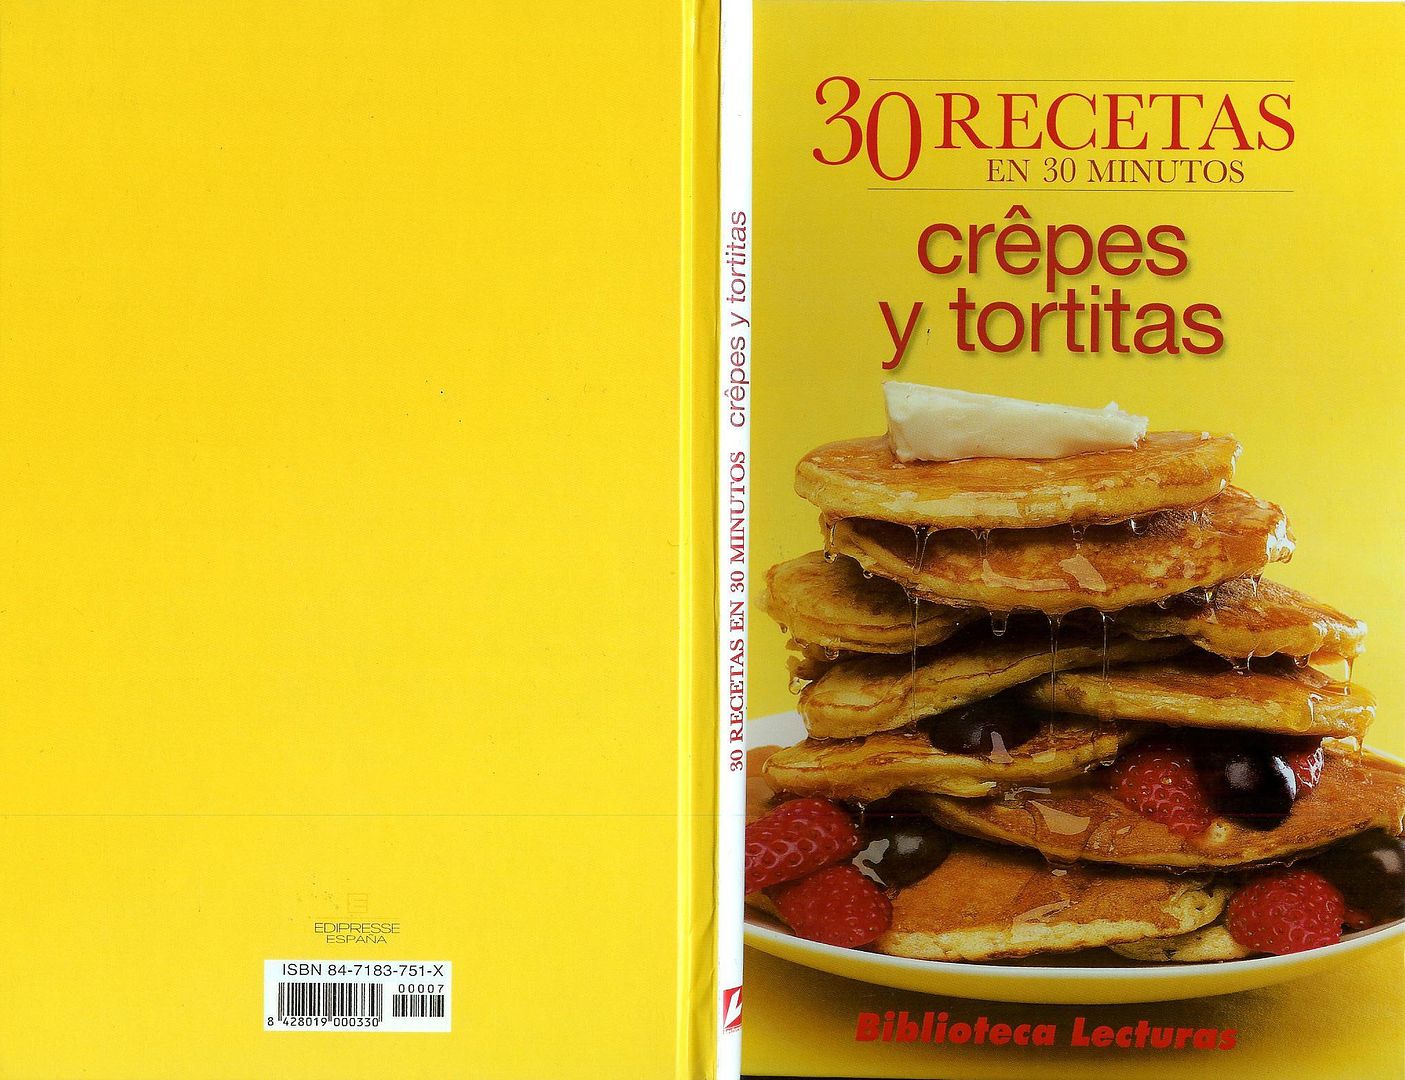 crepes - 30 Recetas en 30 Minutos: Crepes y Tortitas